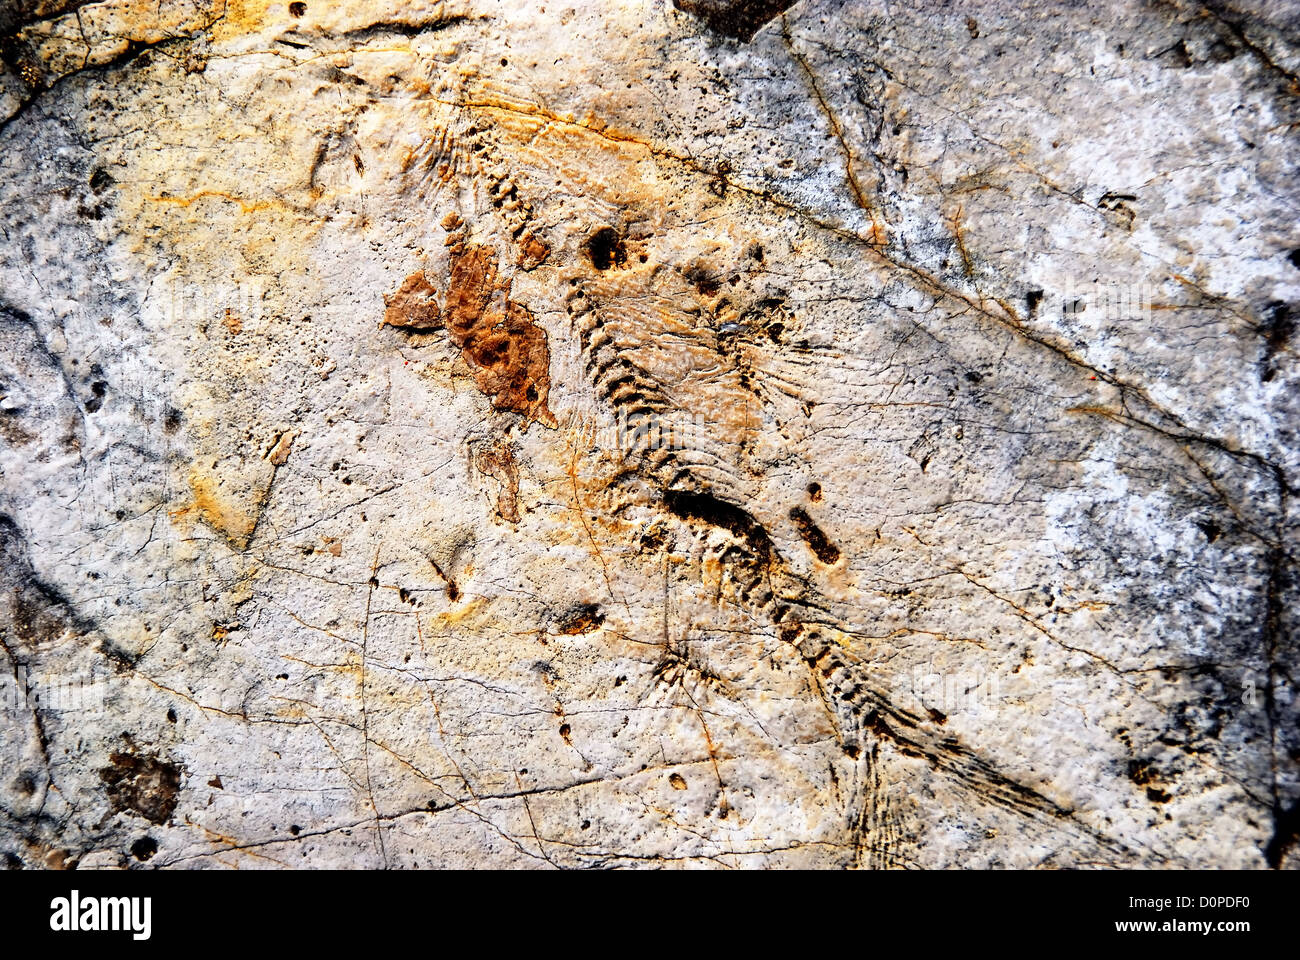 Le dépôt de fossiles de Pietraroja (Benevento), l'Italie, le sud de l'Italie Appennino. Un fossile de poisson. Banque D'Images